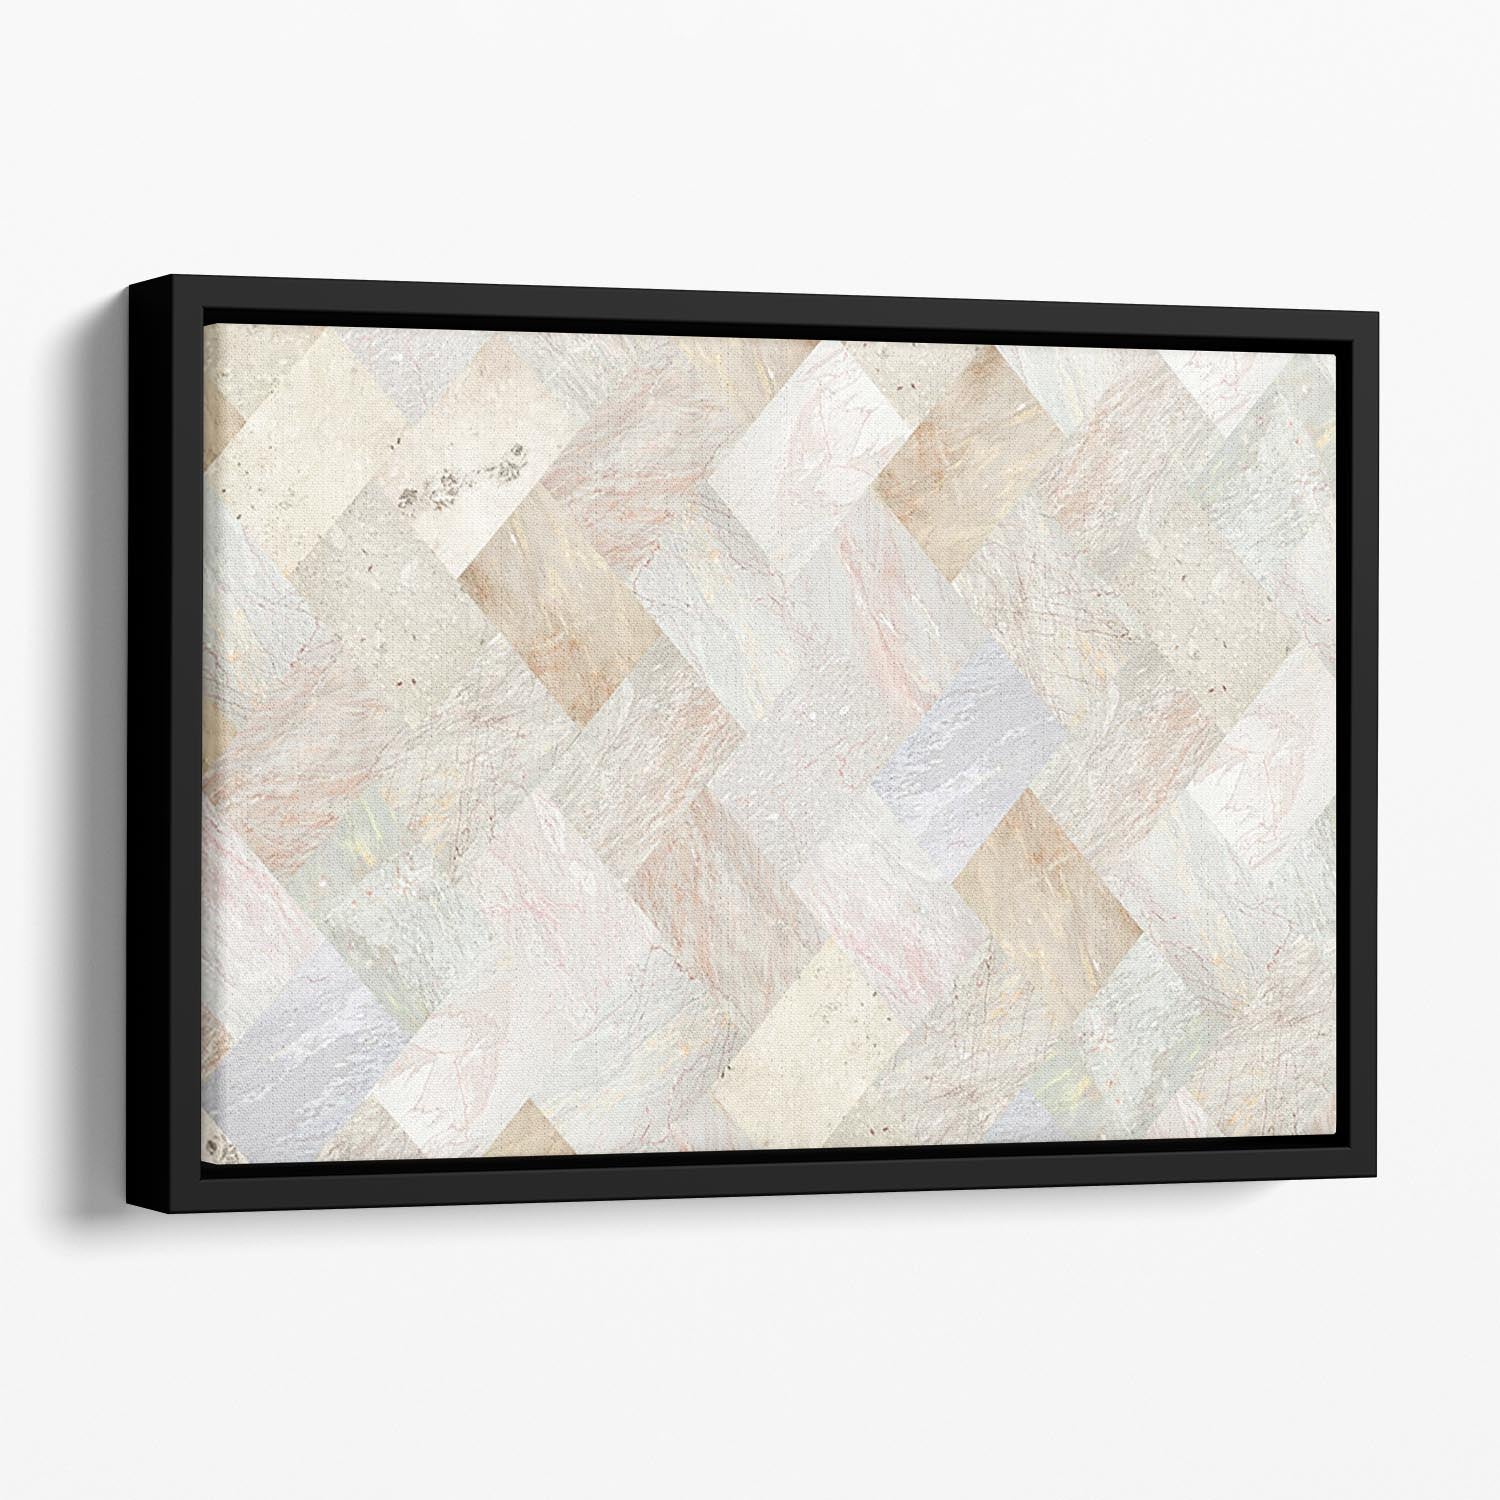 Netural Patterned Marble Floating Framed Canvas - Canvas Art Rocks - 1